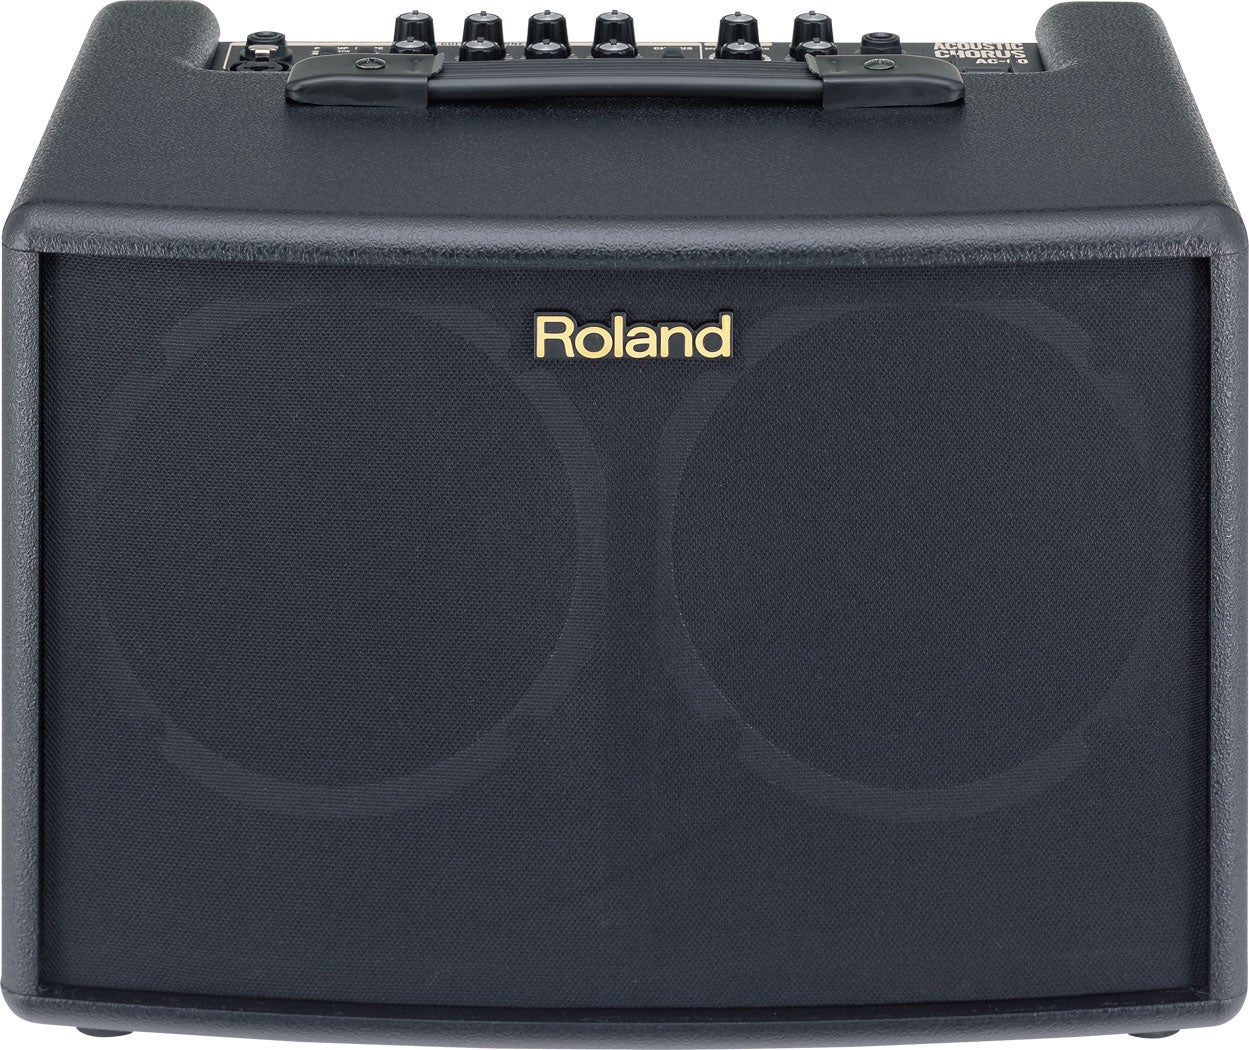 Guitarcombo, Roland AC - 60, 2X30 W